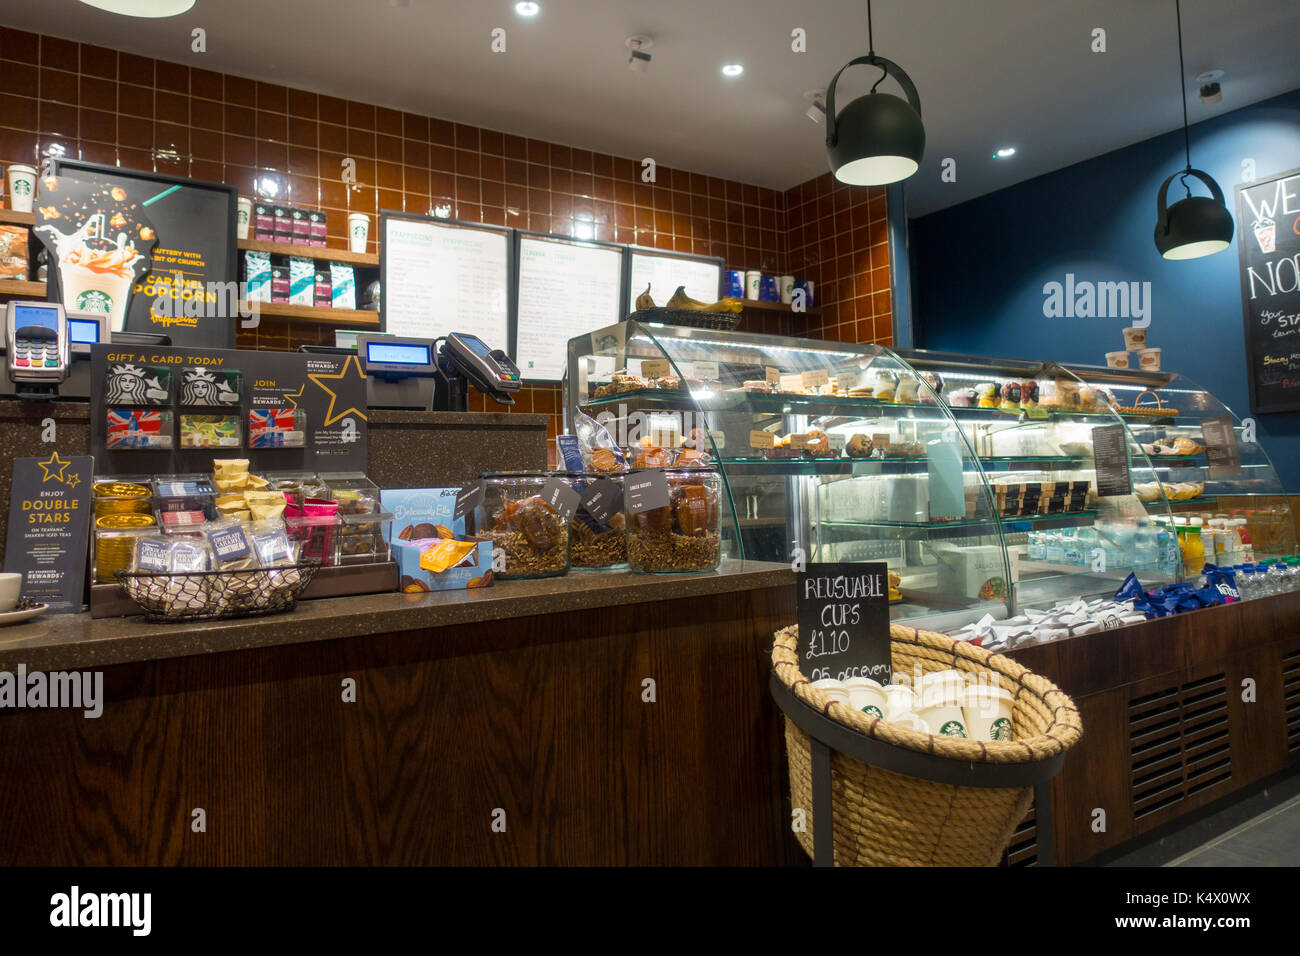 Starbucks Coffee Counter Display Mit Produkten Kuchen